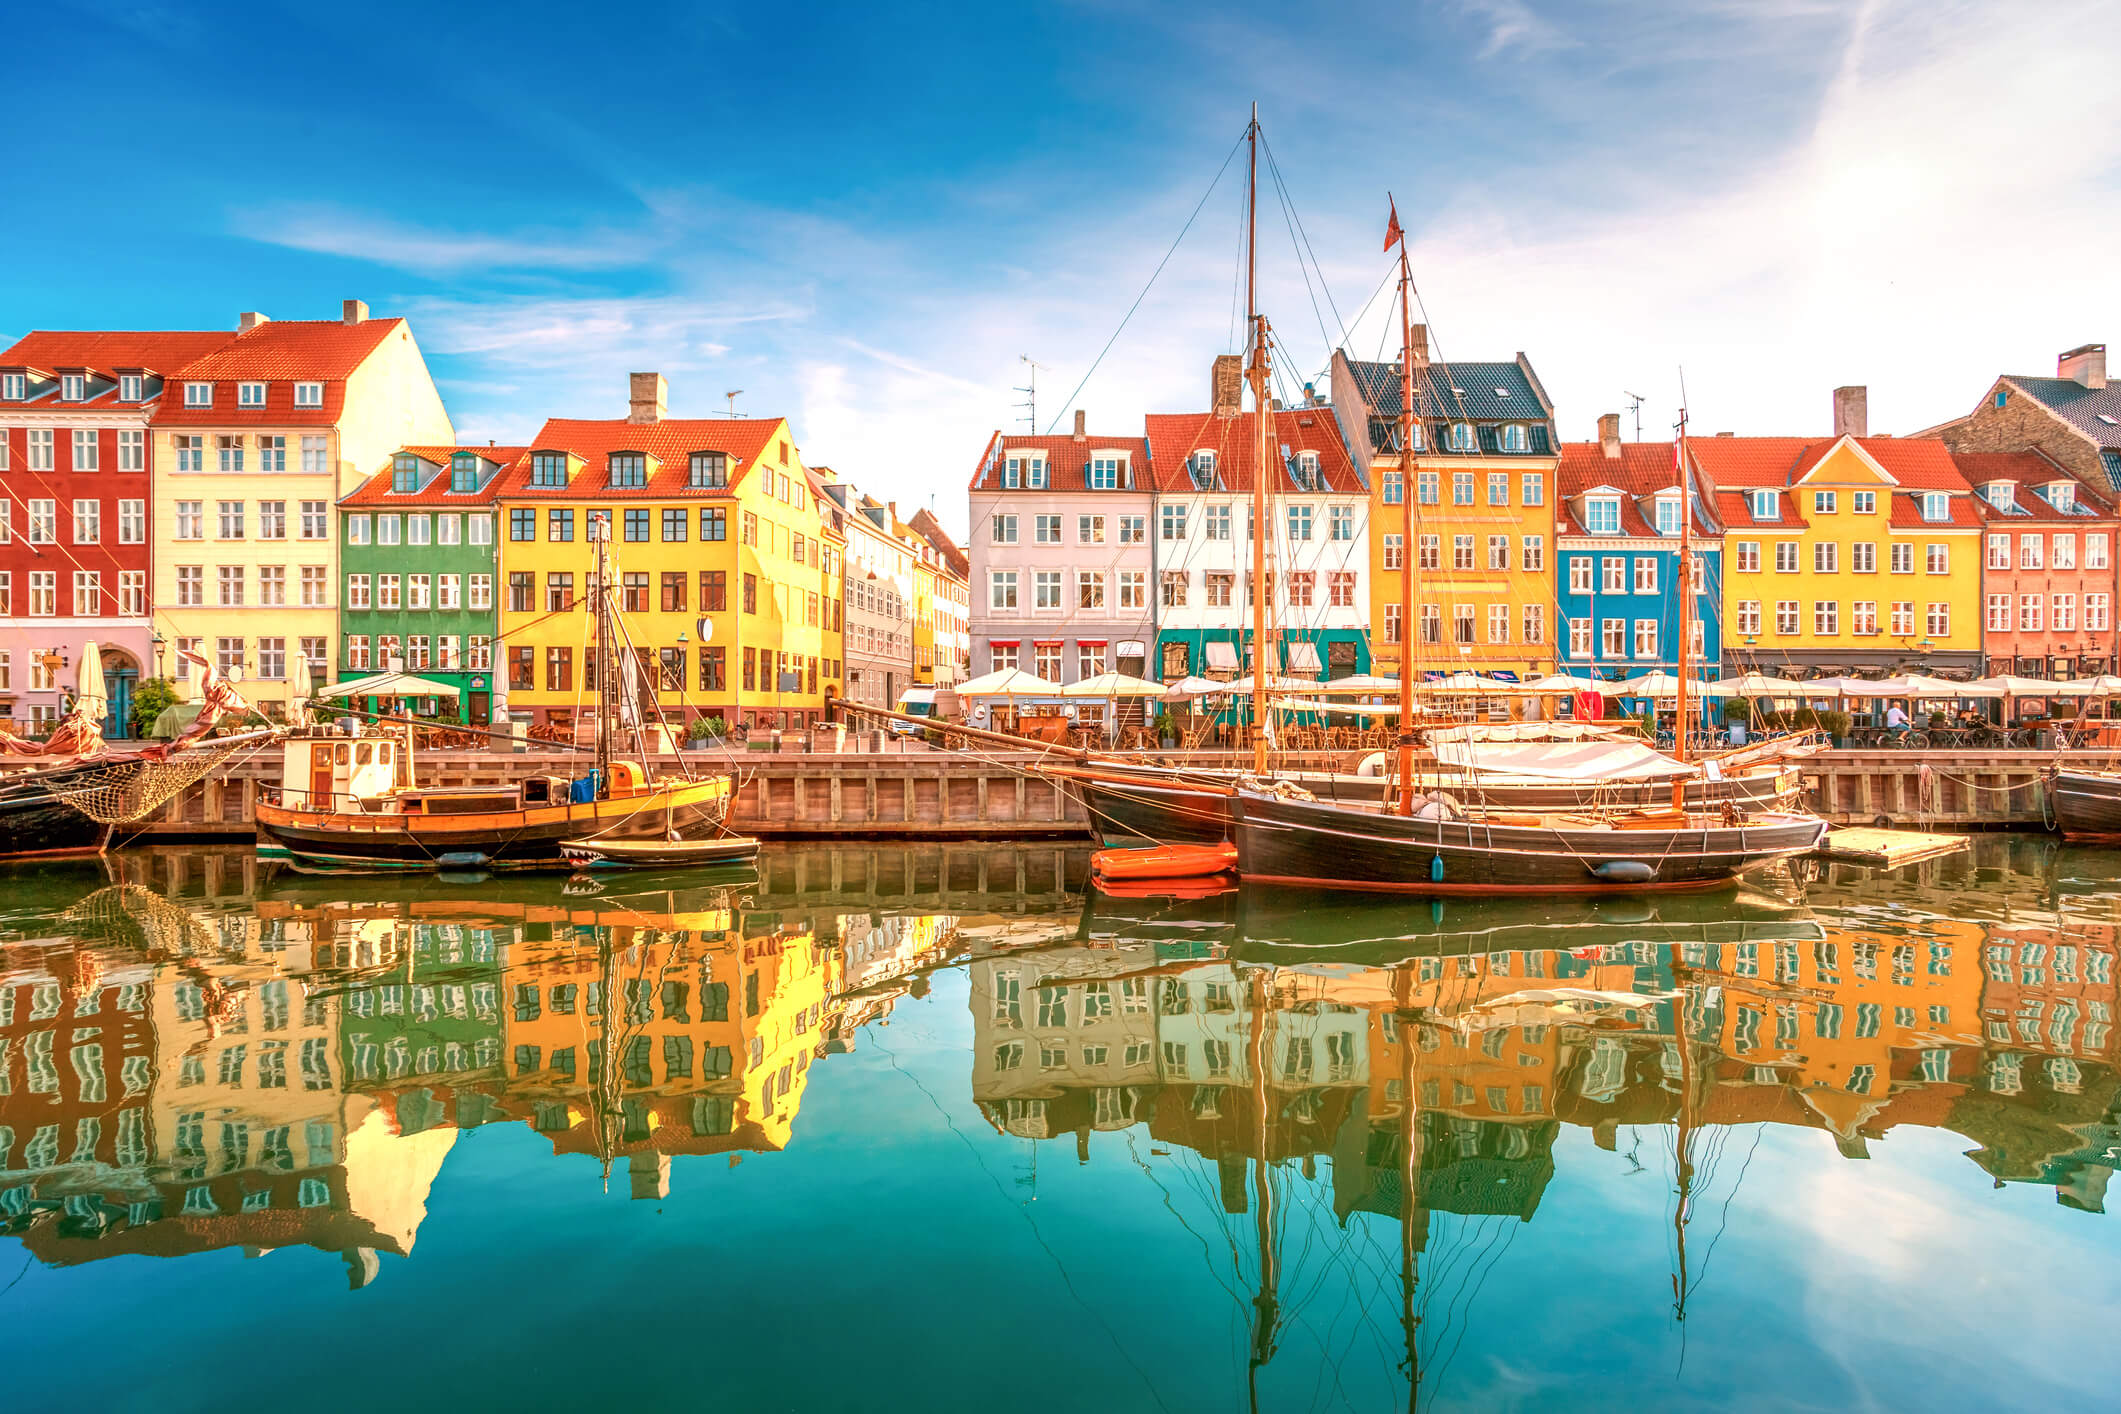 FAQ: Häufige Fragen zum gelungenen Urlaub in Dänemark